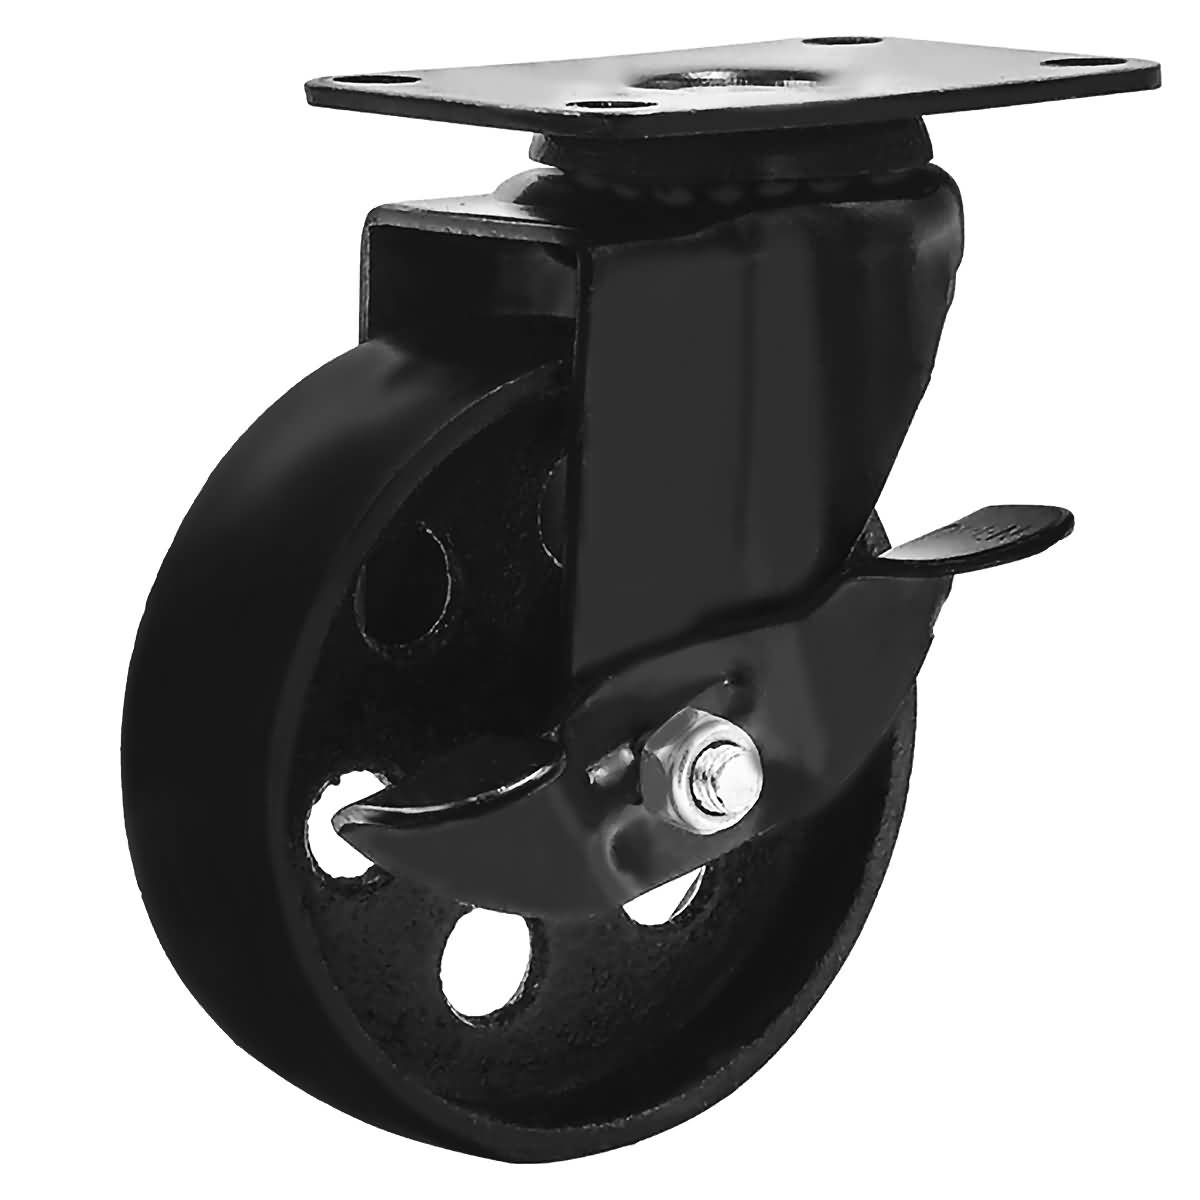 2 No Brake FactorDuty 4 All Black Metal Swivel Plate Caster Wheels Heavy Duty High-Gauge Steel 